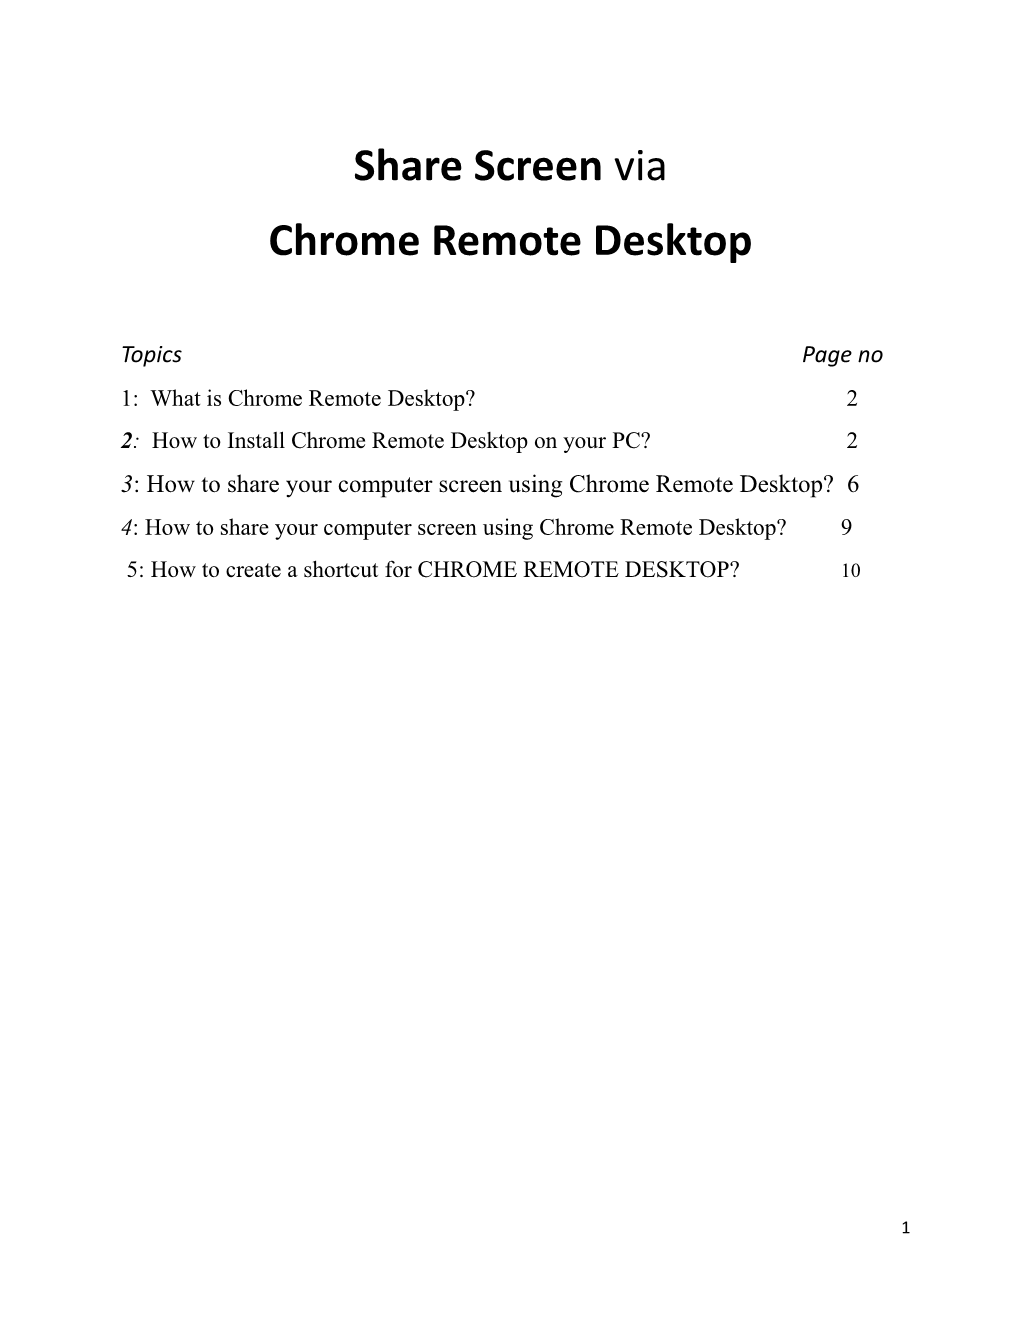 Share Screen Via Chrome Remote Desktop